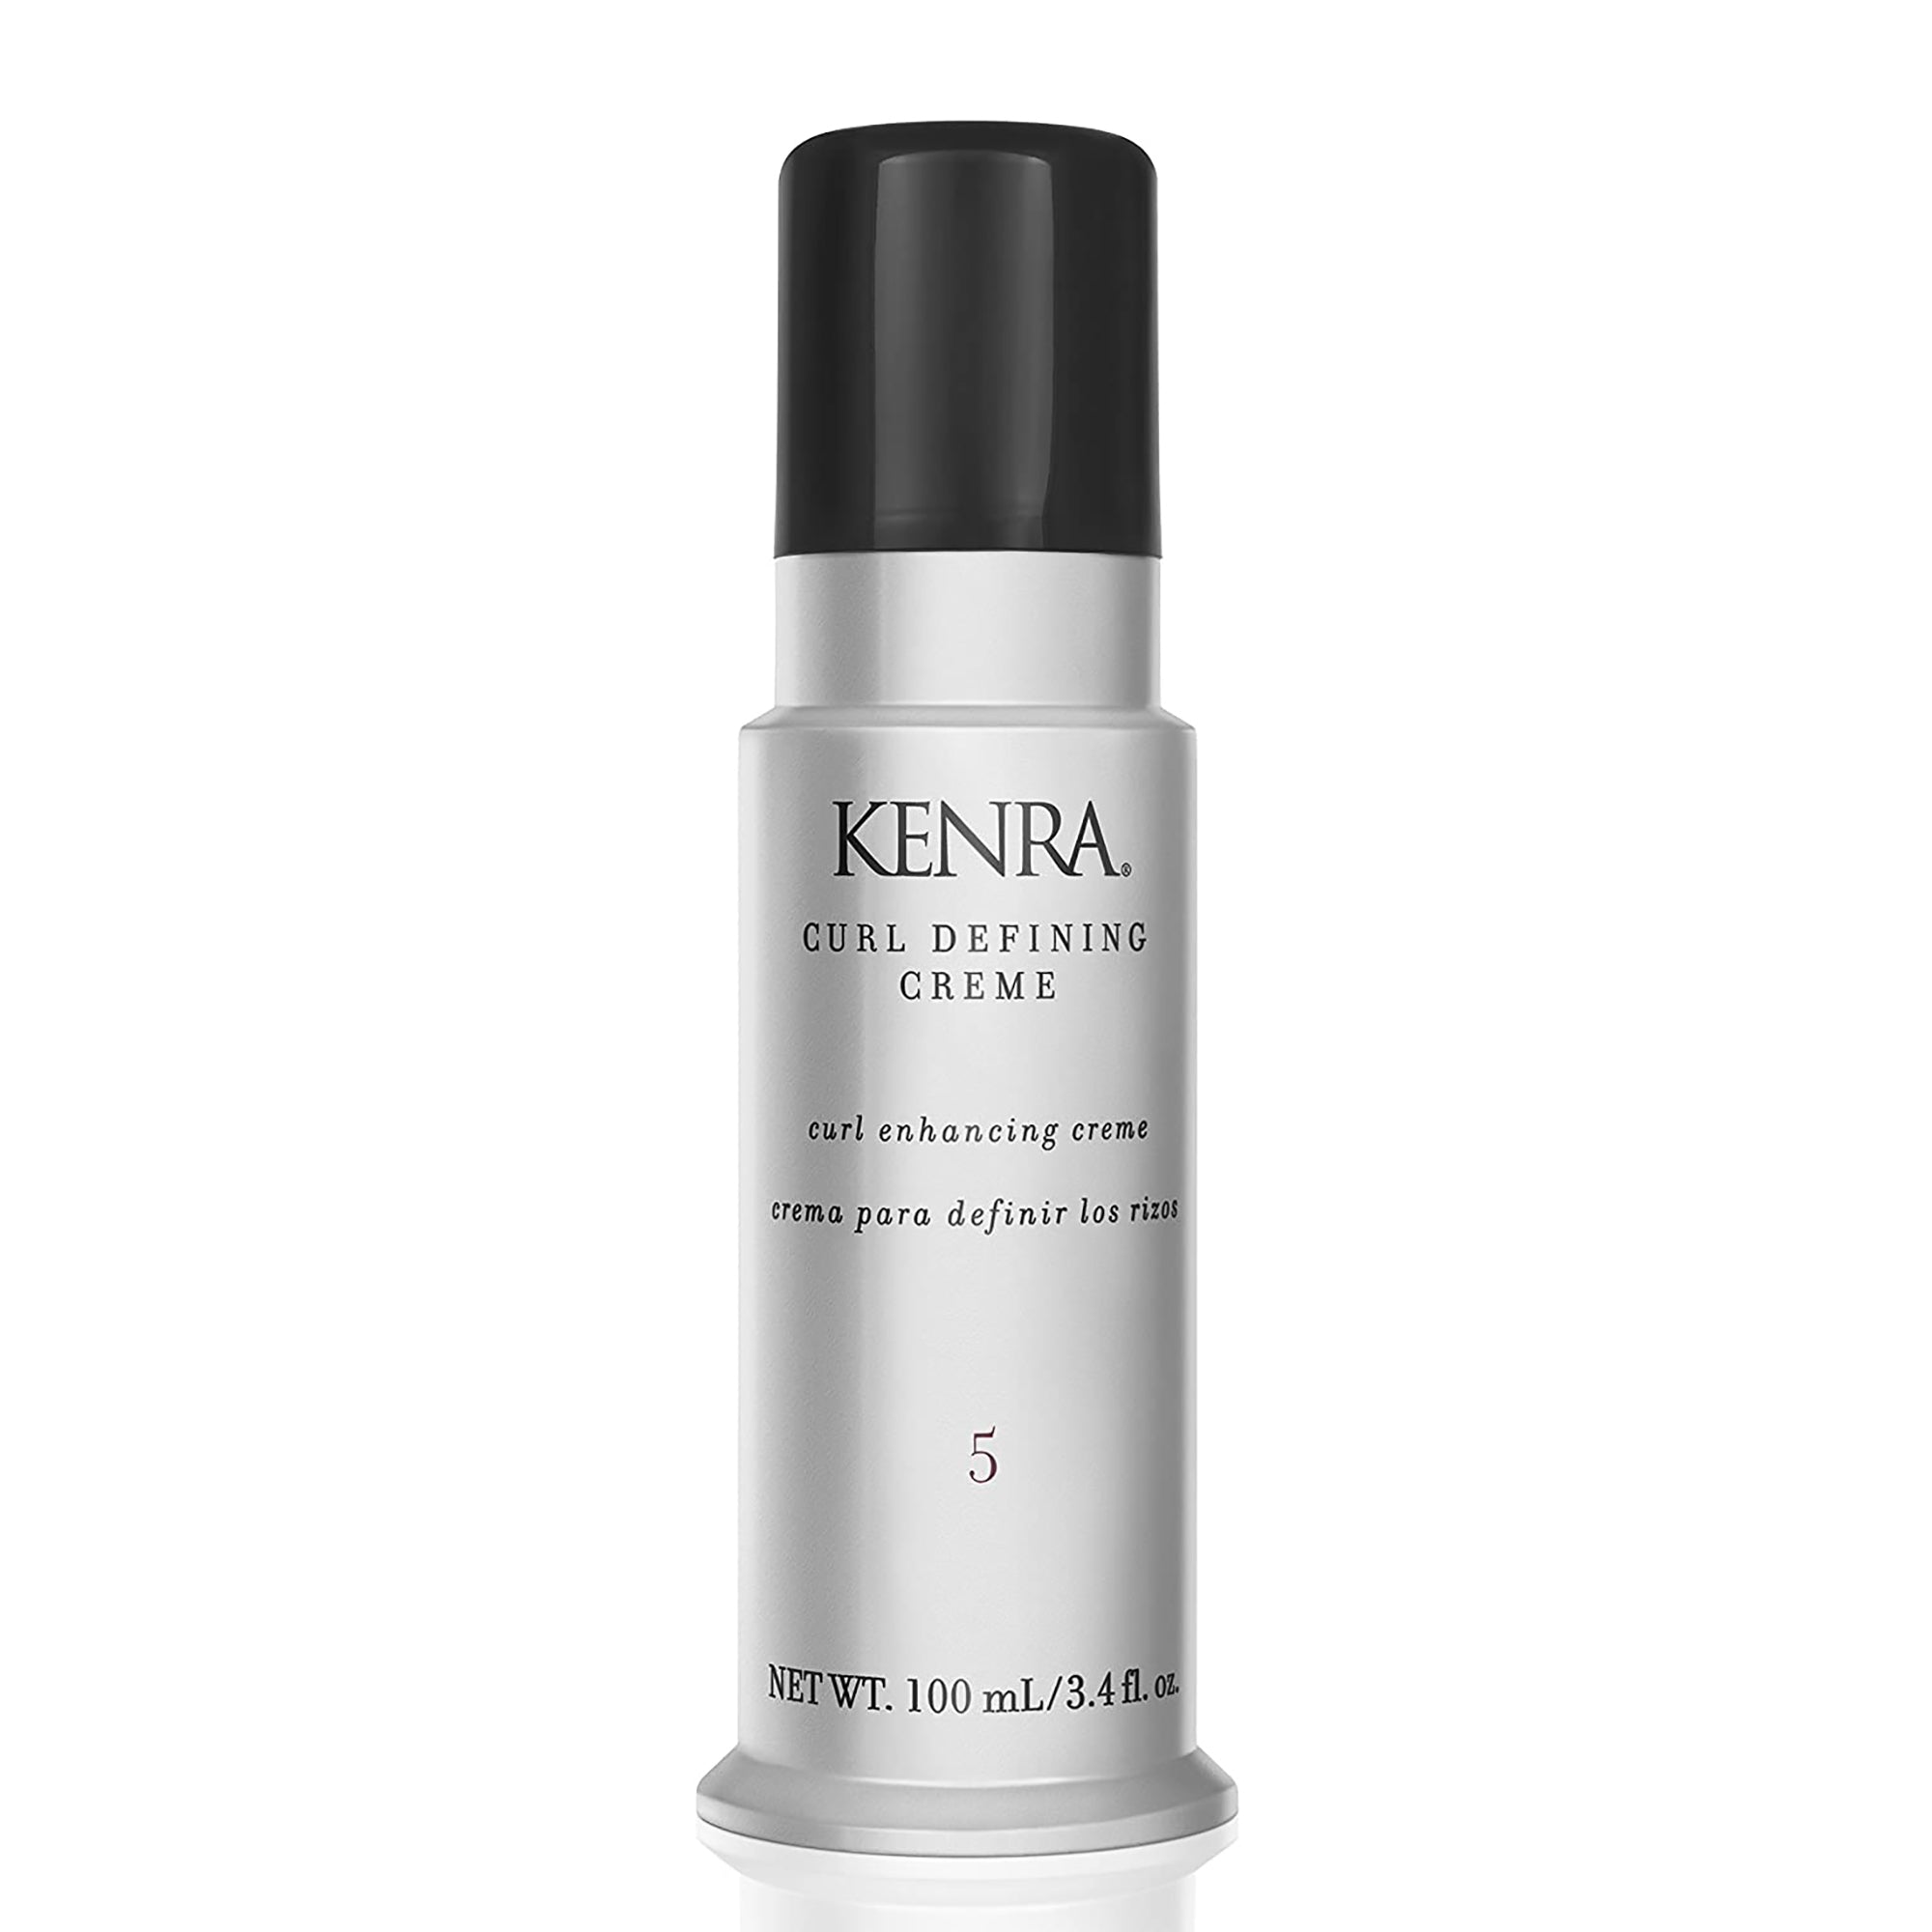 Kenra Professional Curl Defining Creme 5 - 3.4oz / 3.4